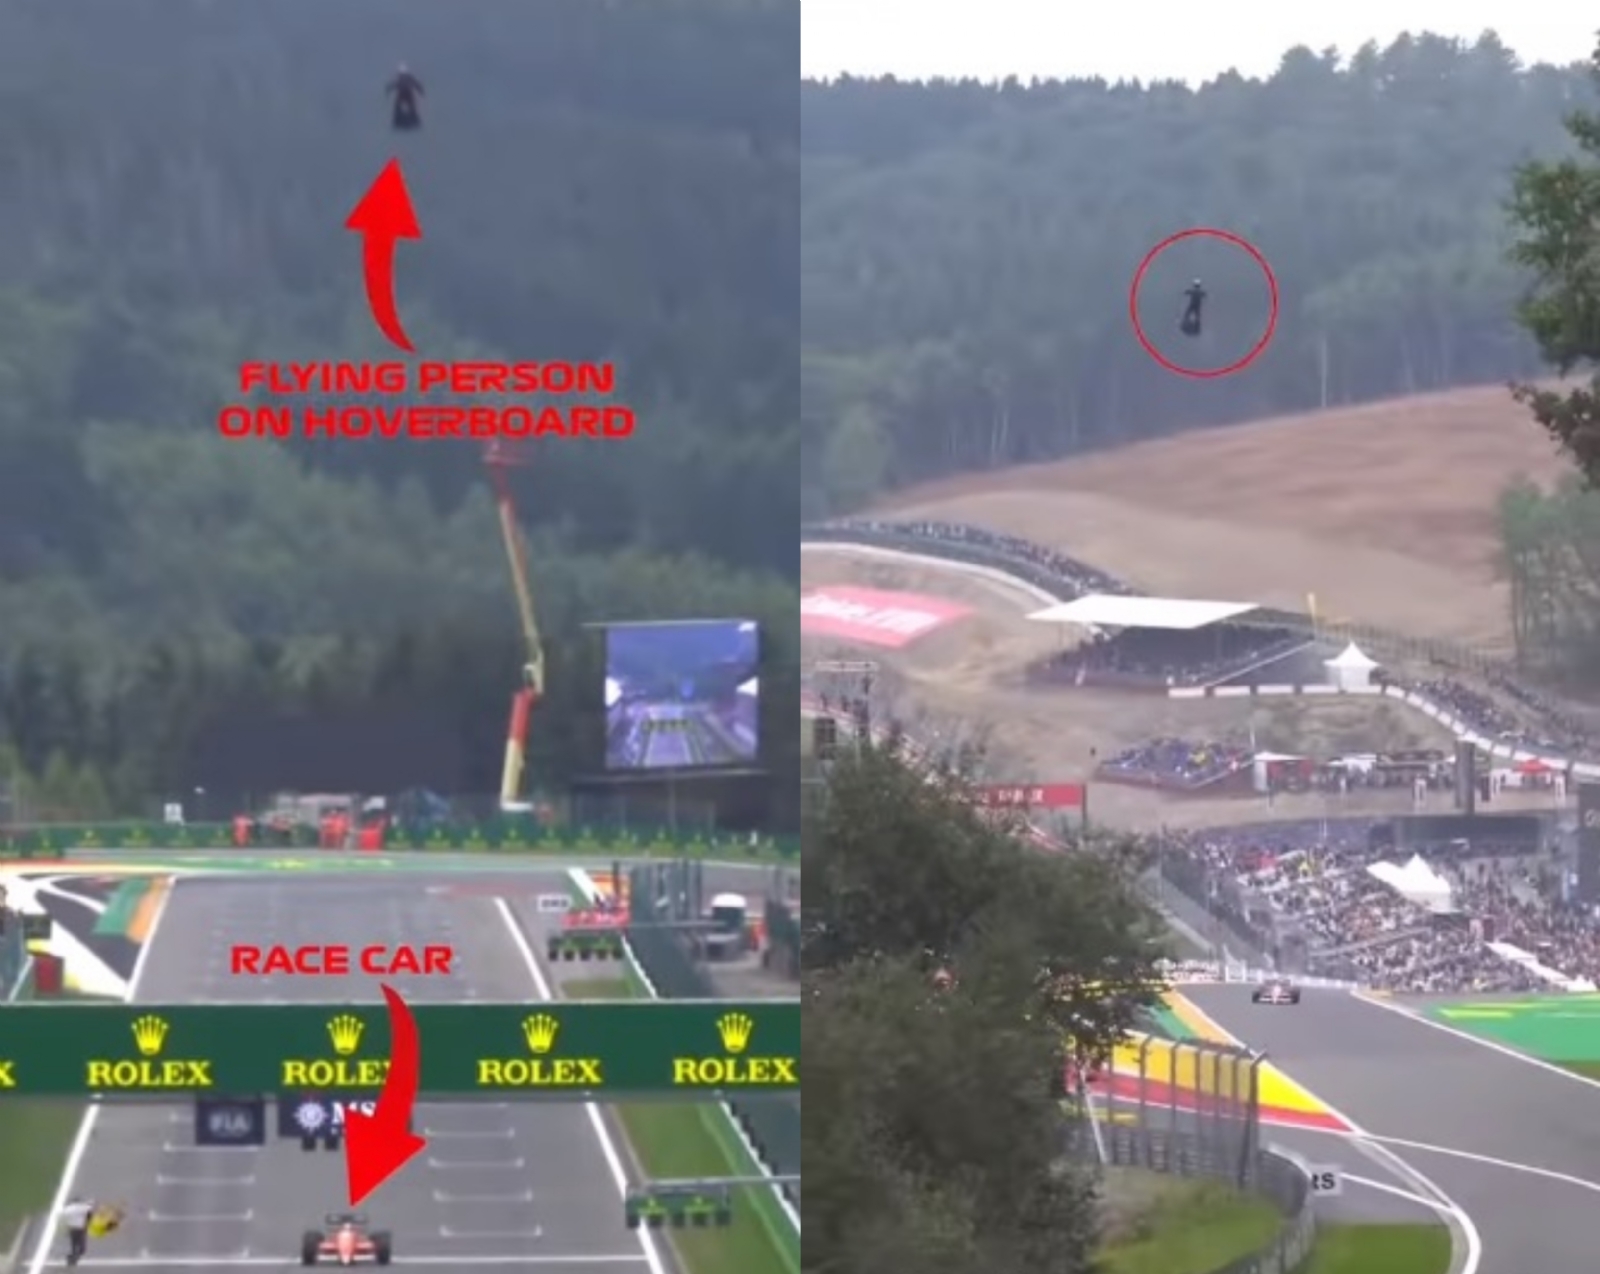 ¡Hoverboard vs coches de carreras! Hombre 'vuela' sobre los monoplaza durante el GP de Bélgica: VIDEO